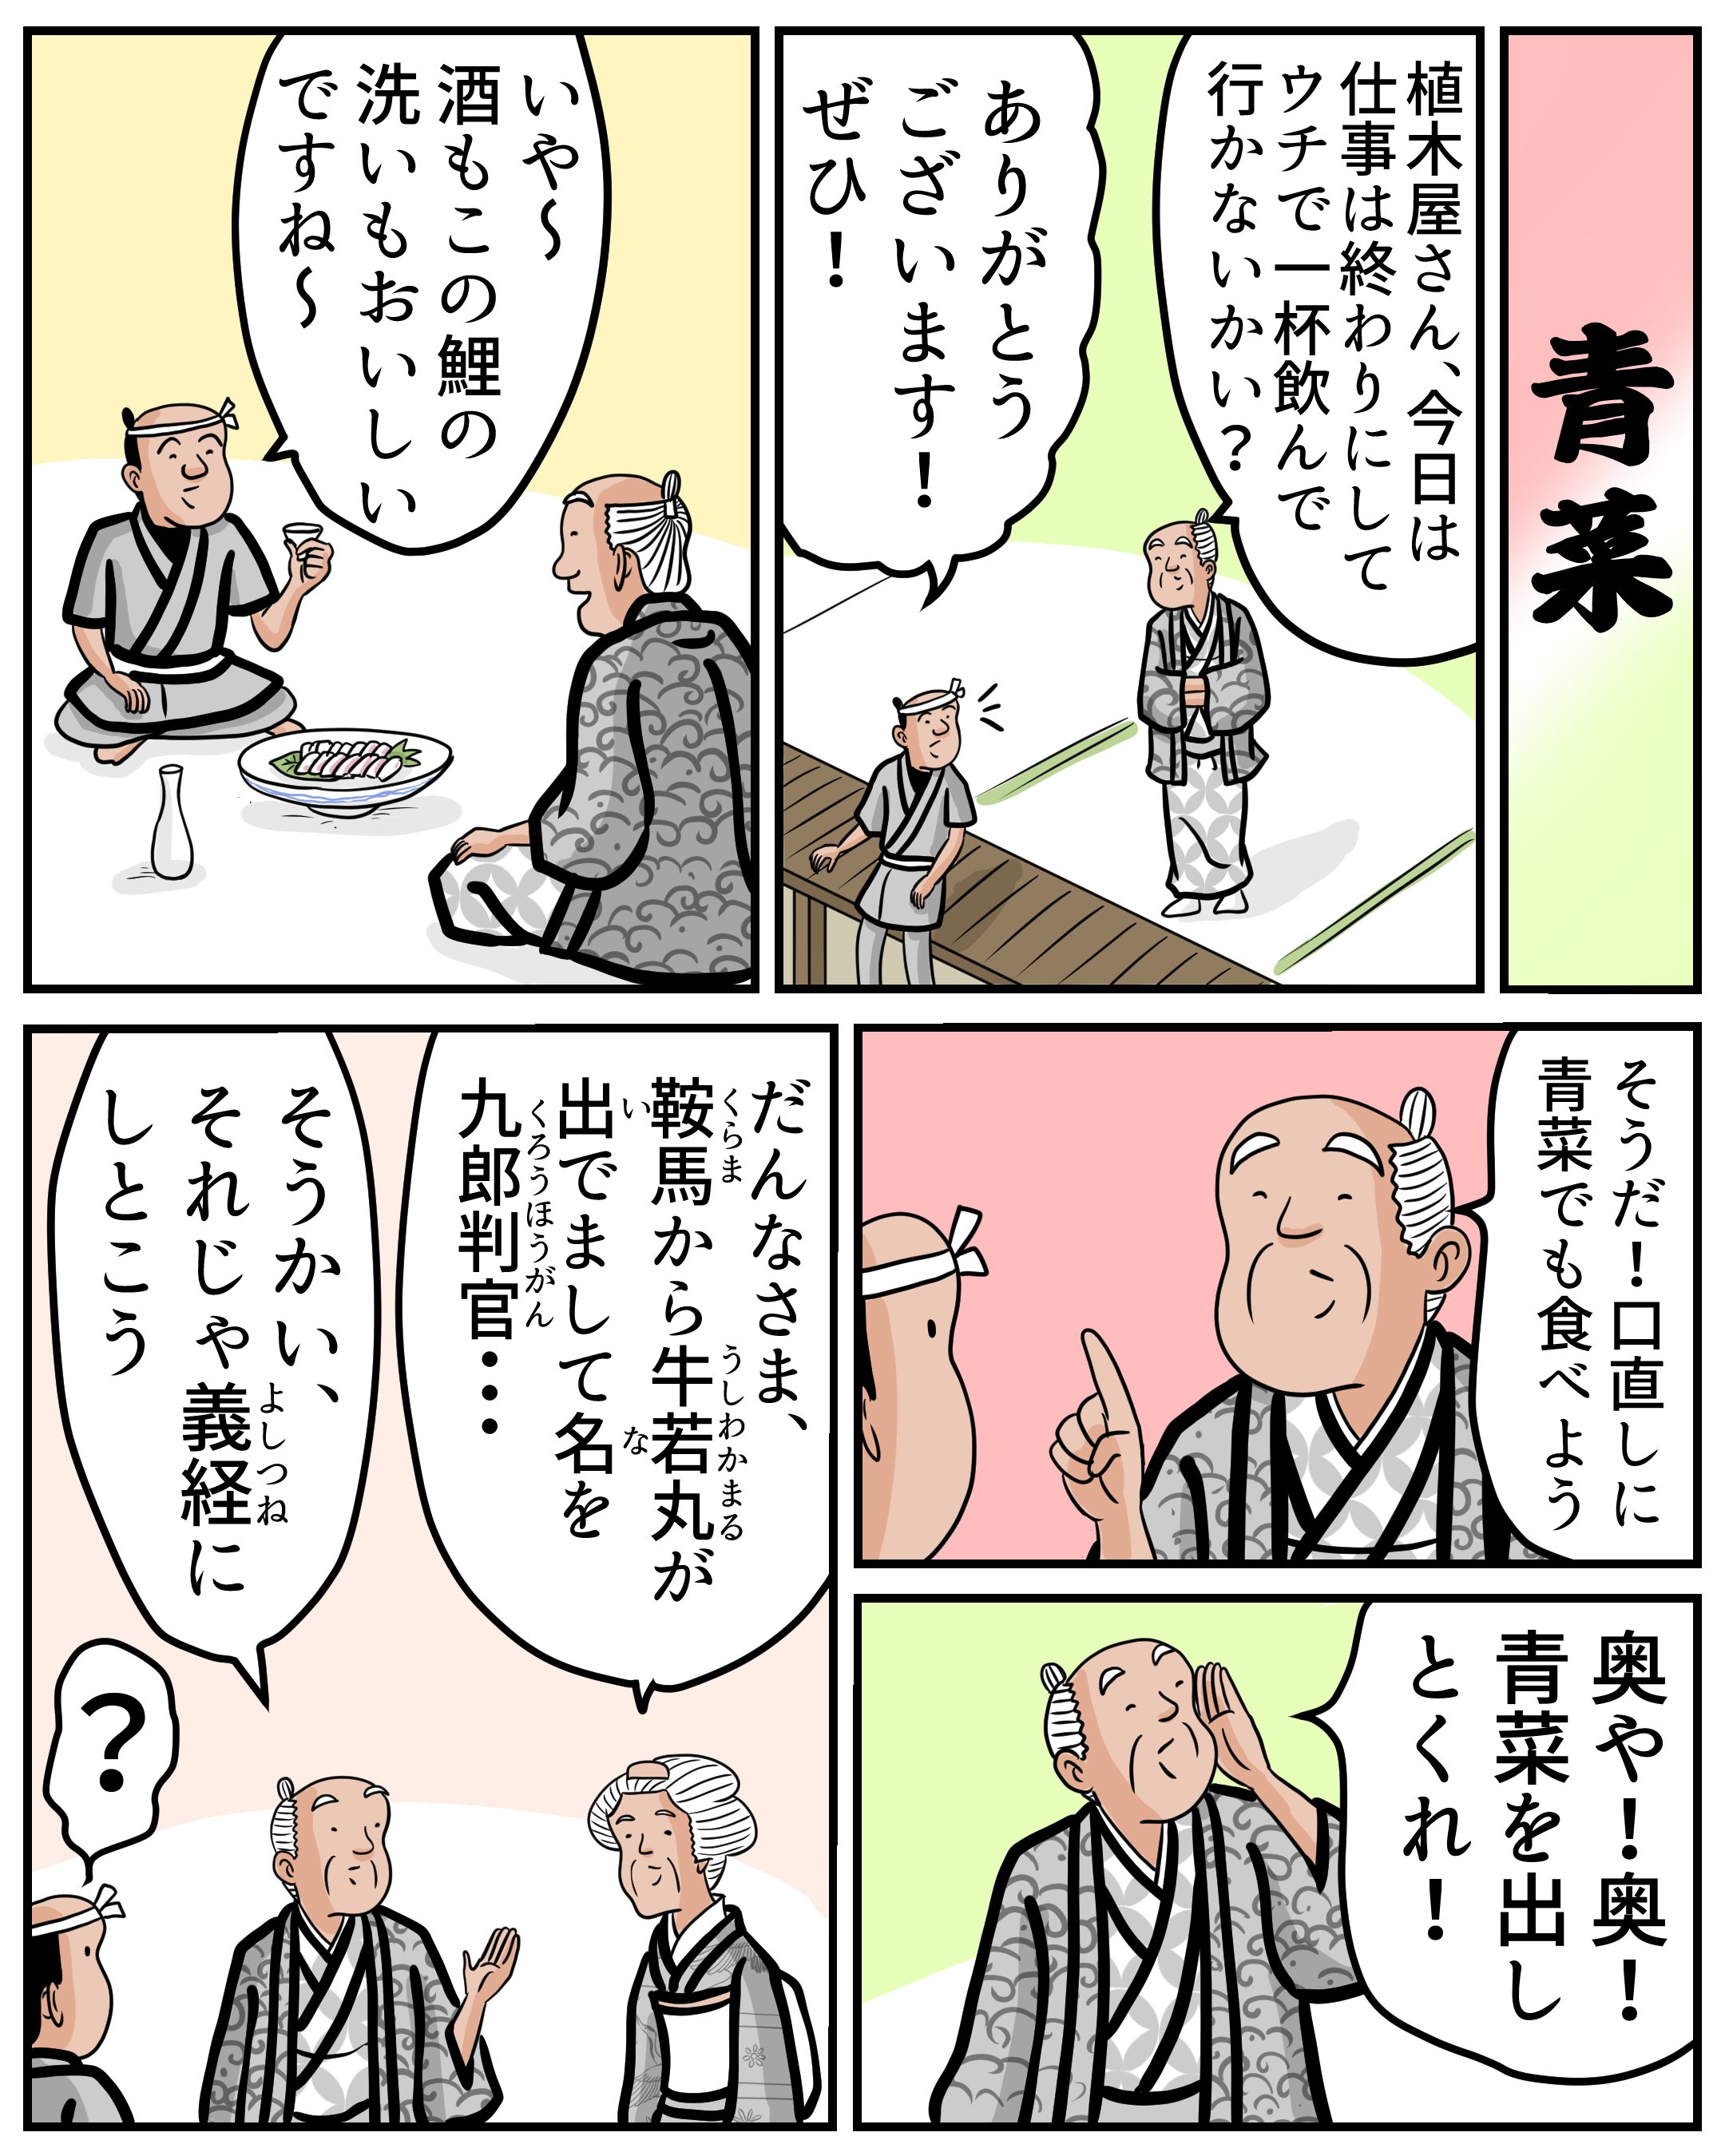 １分で読める マンガで落語 青菜 山田全自動の漫画 Note